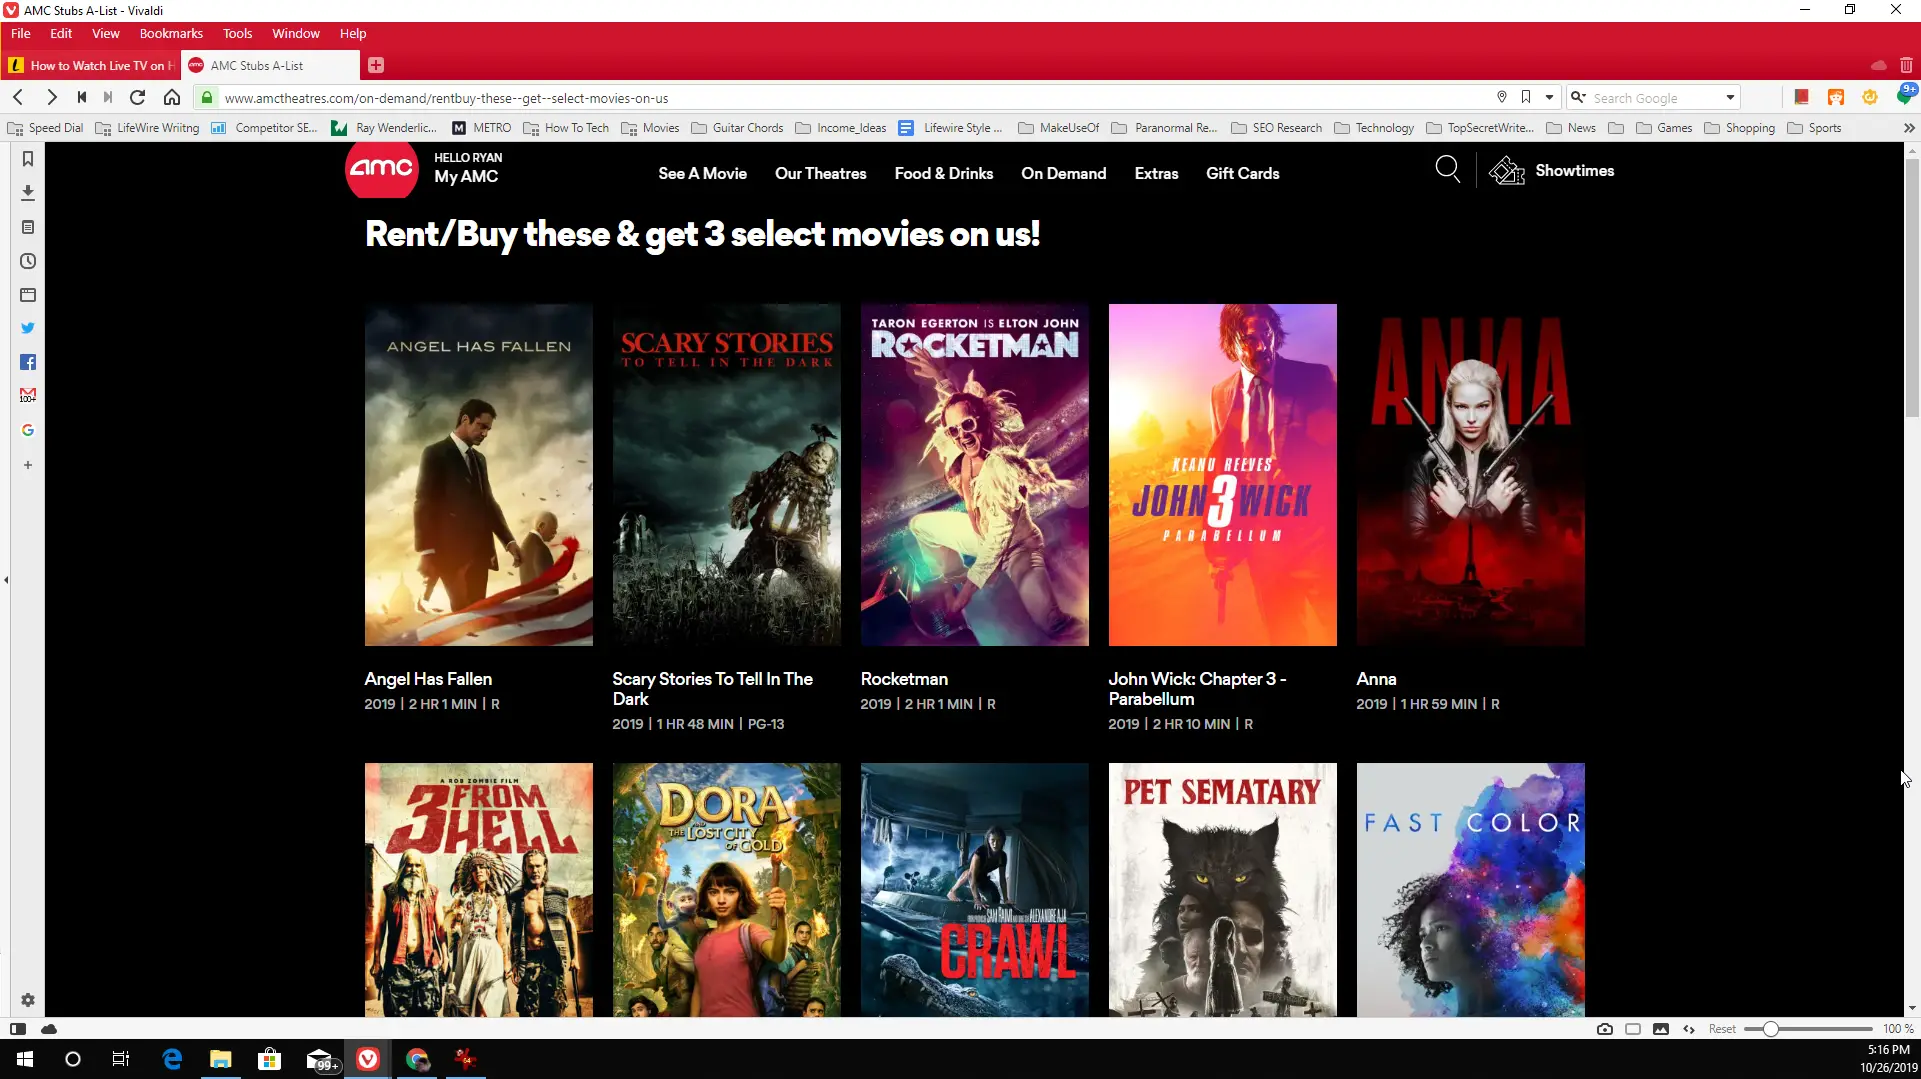 Captura de tela da lista de filmes do AMC Theatres Movies on Demand